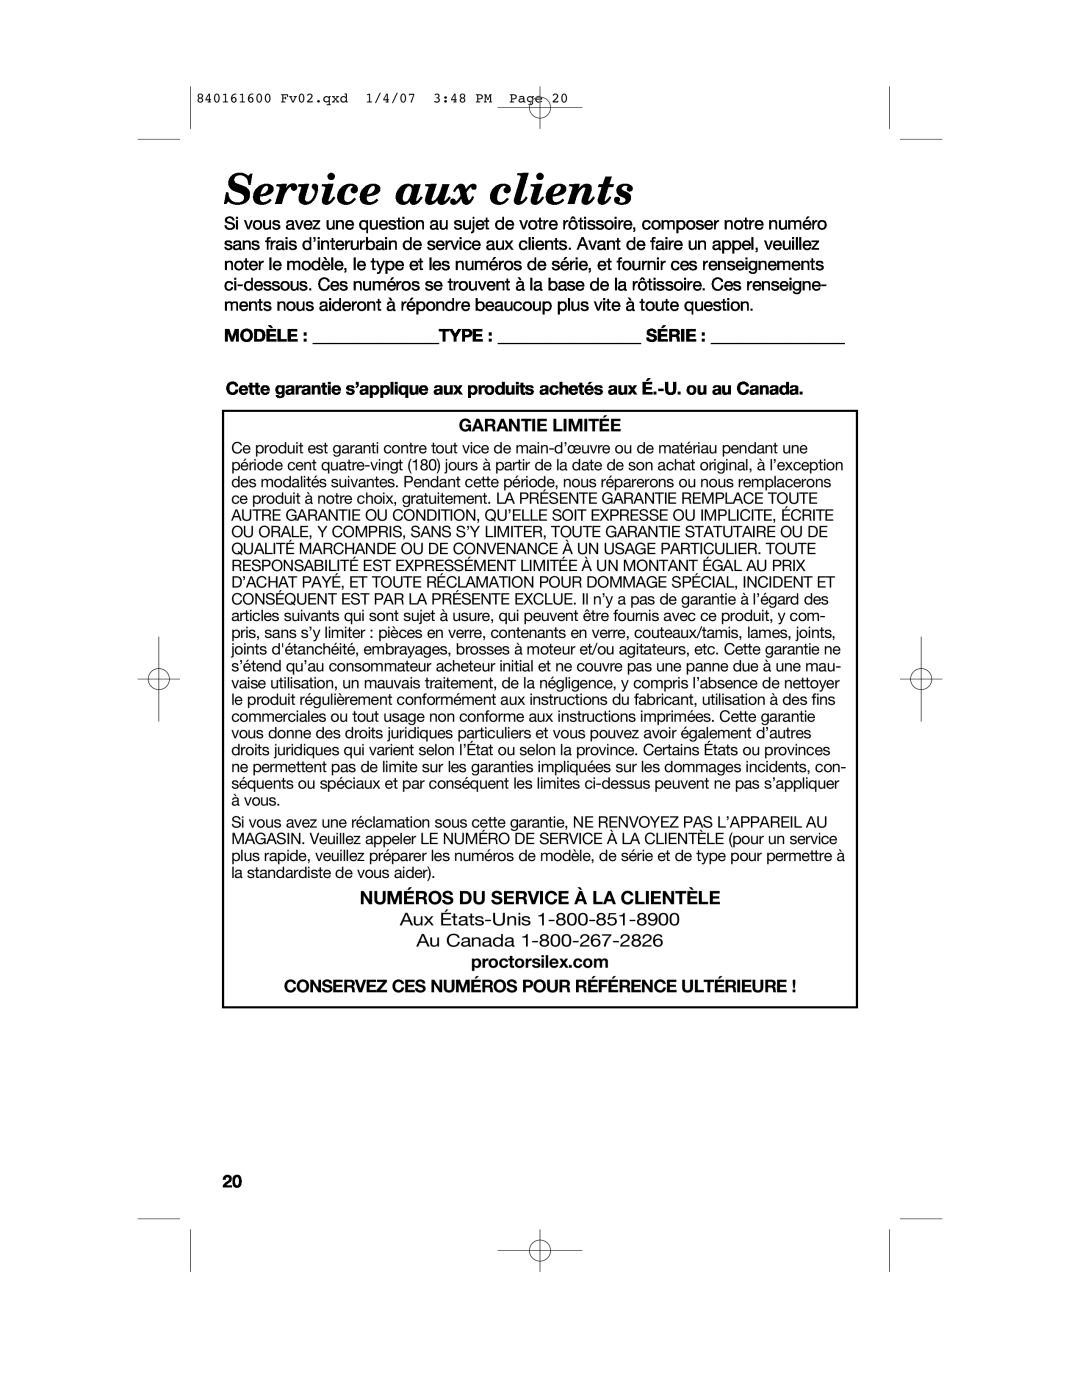 Proctor-Silex 840161600 manual Service aux clients, Numéros Du Service À La Clientèle, Garantie Limitée 